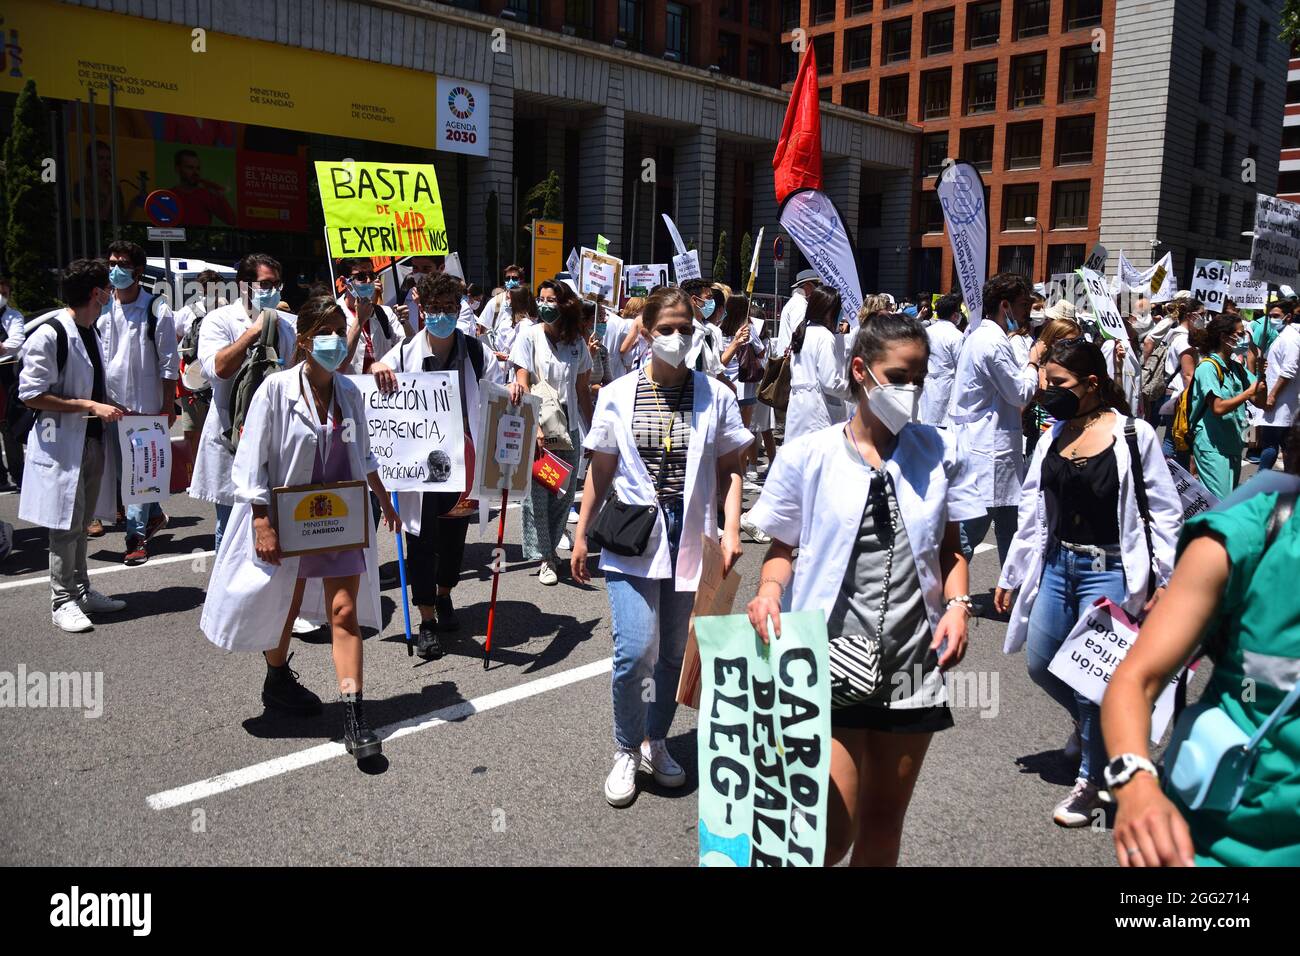 Manifestation de travailleurs médicaux, protestant contre la politique de gestion incompétente par le ministère de la Santé. Espagne, Madrid en juin 2021. Banque D'Images